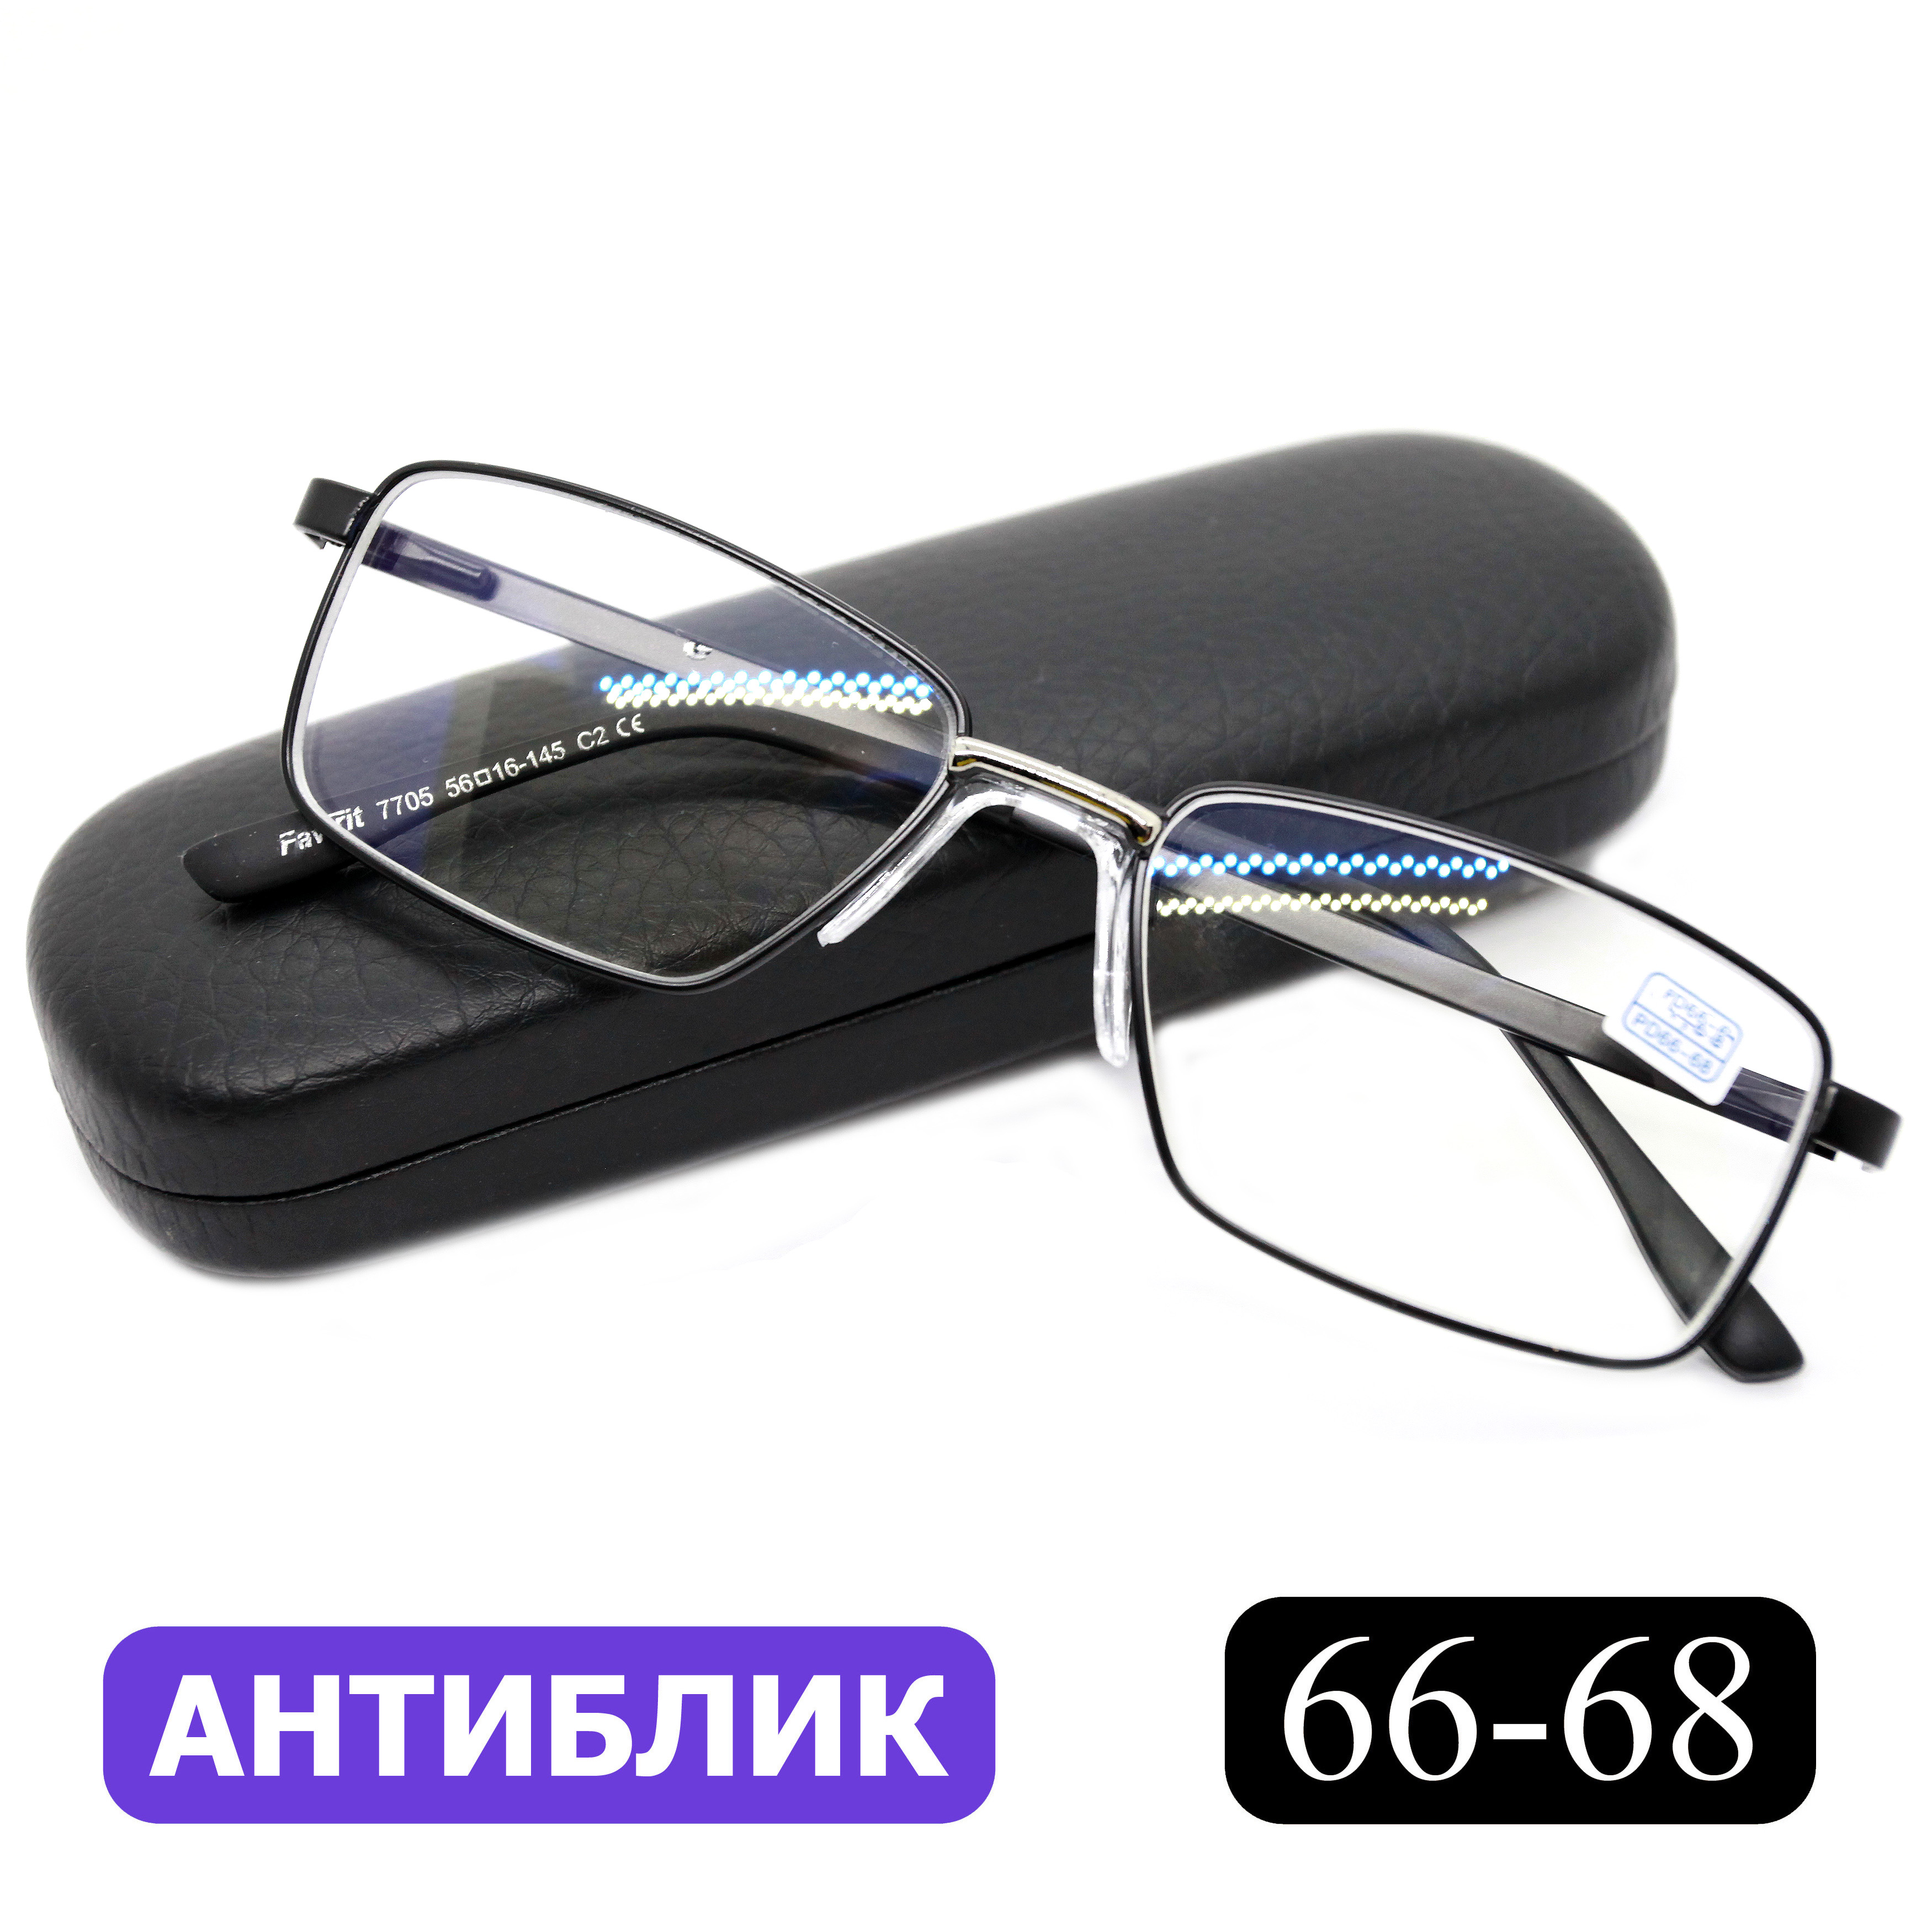 Готовые очки для зрения Favarit 7705 -5,50, c футляром, с антибликом, черные, РЦ 66-68